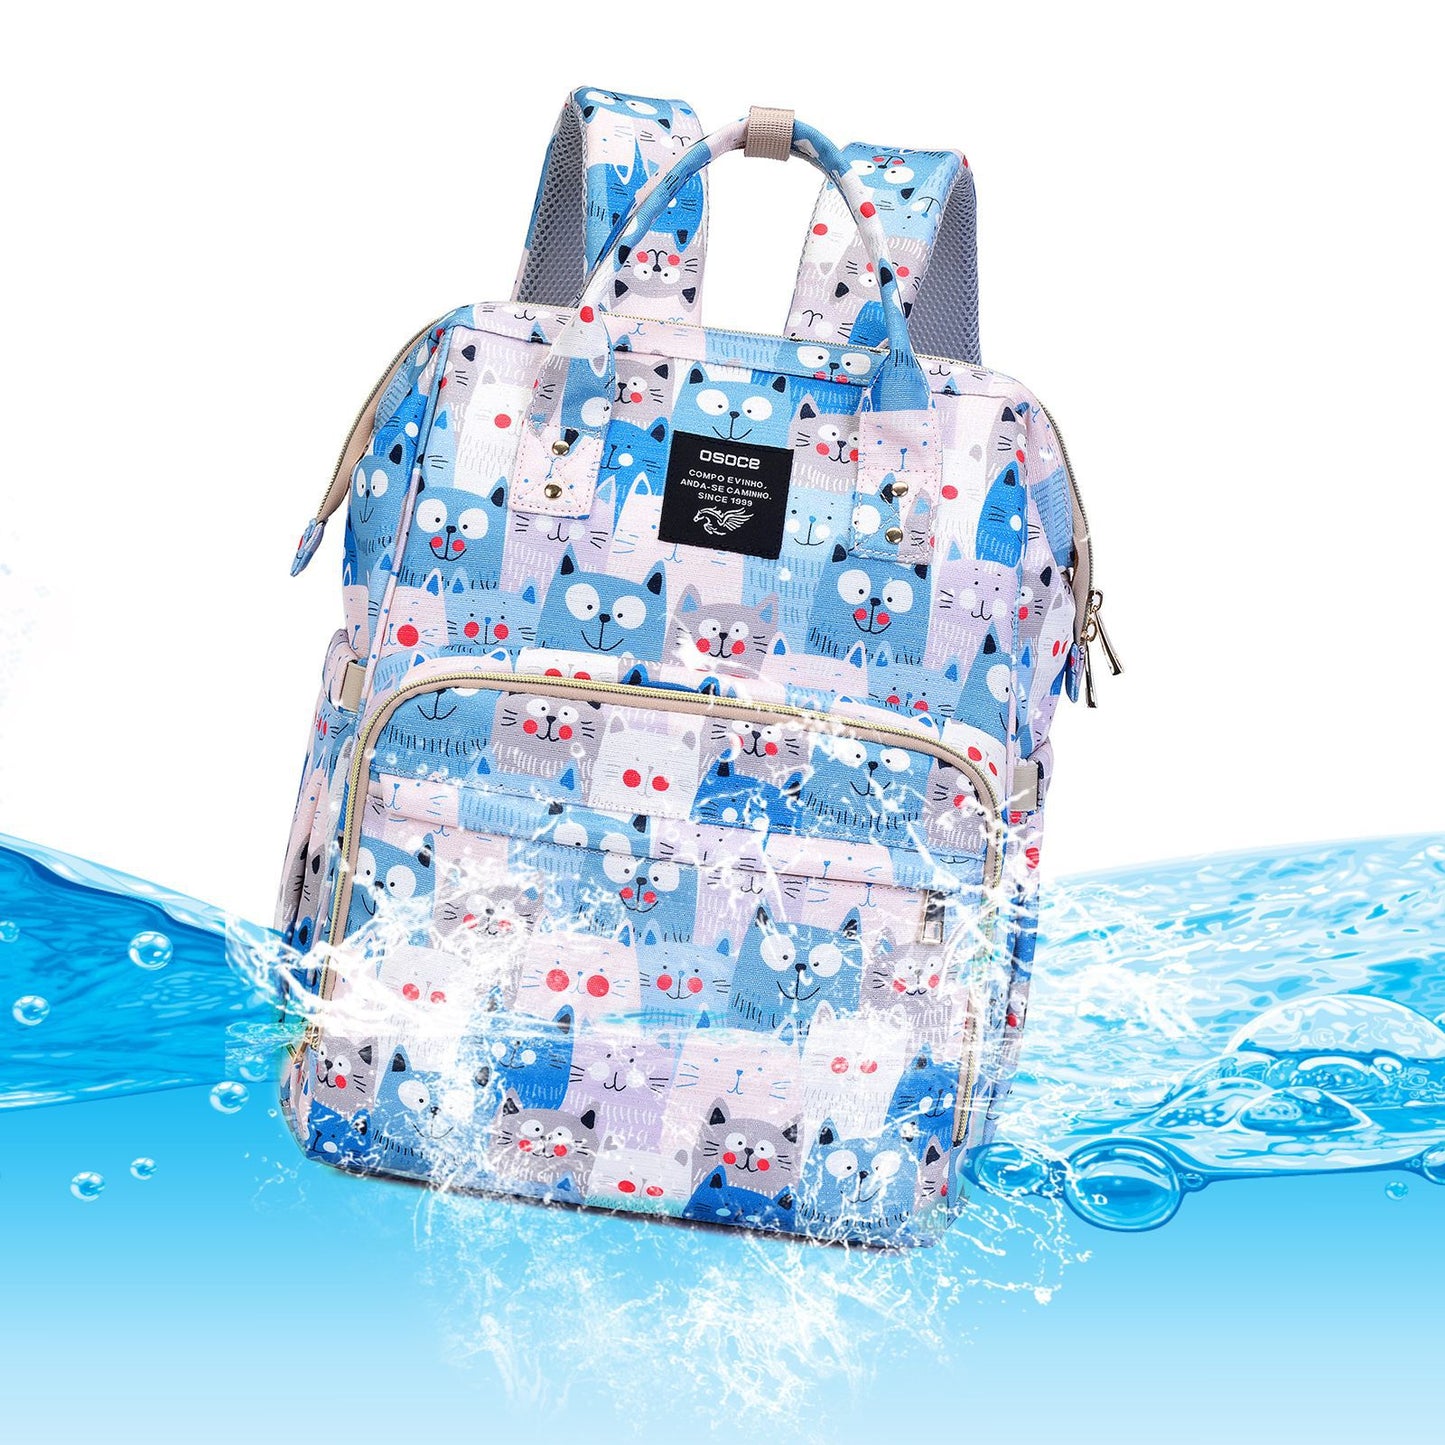 OSOCE M22 Diaper Backpack